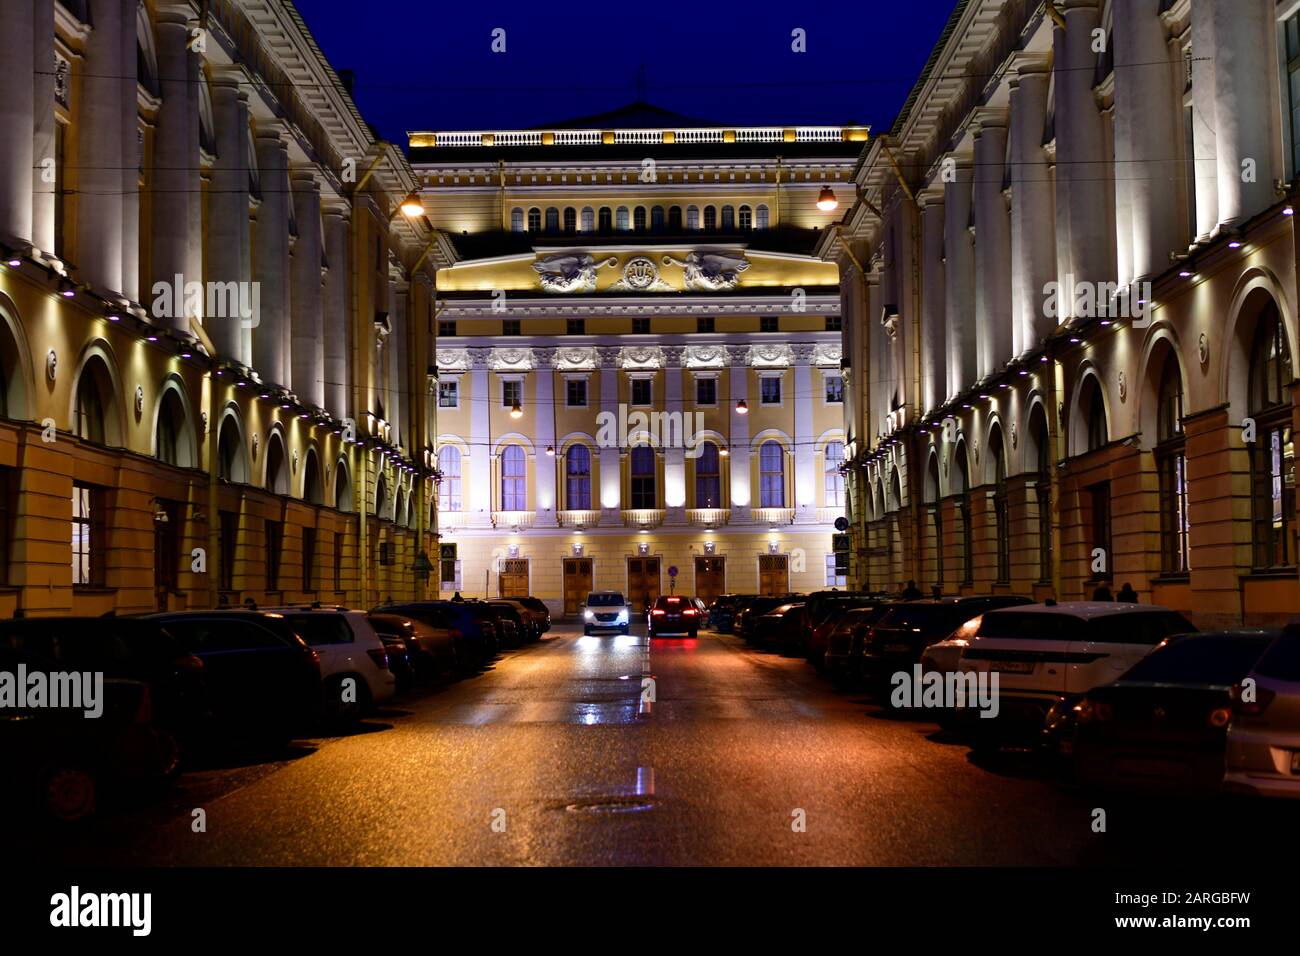 Alexandrinskiy Theatre in Saint Petersburg,Russia. Stock Photo